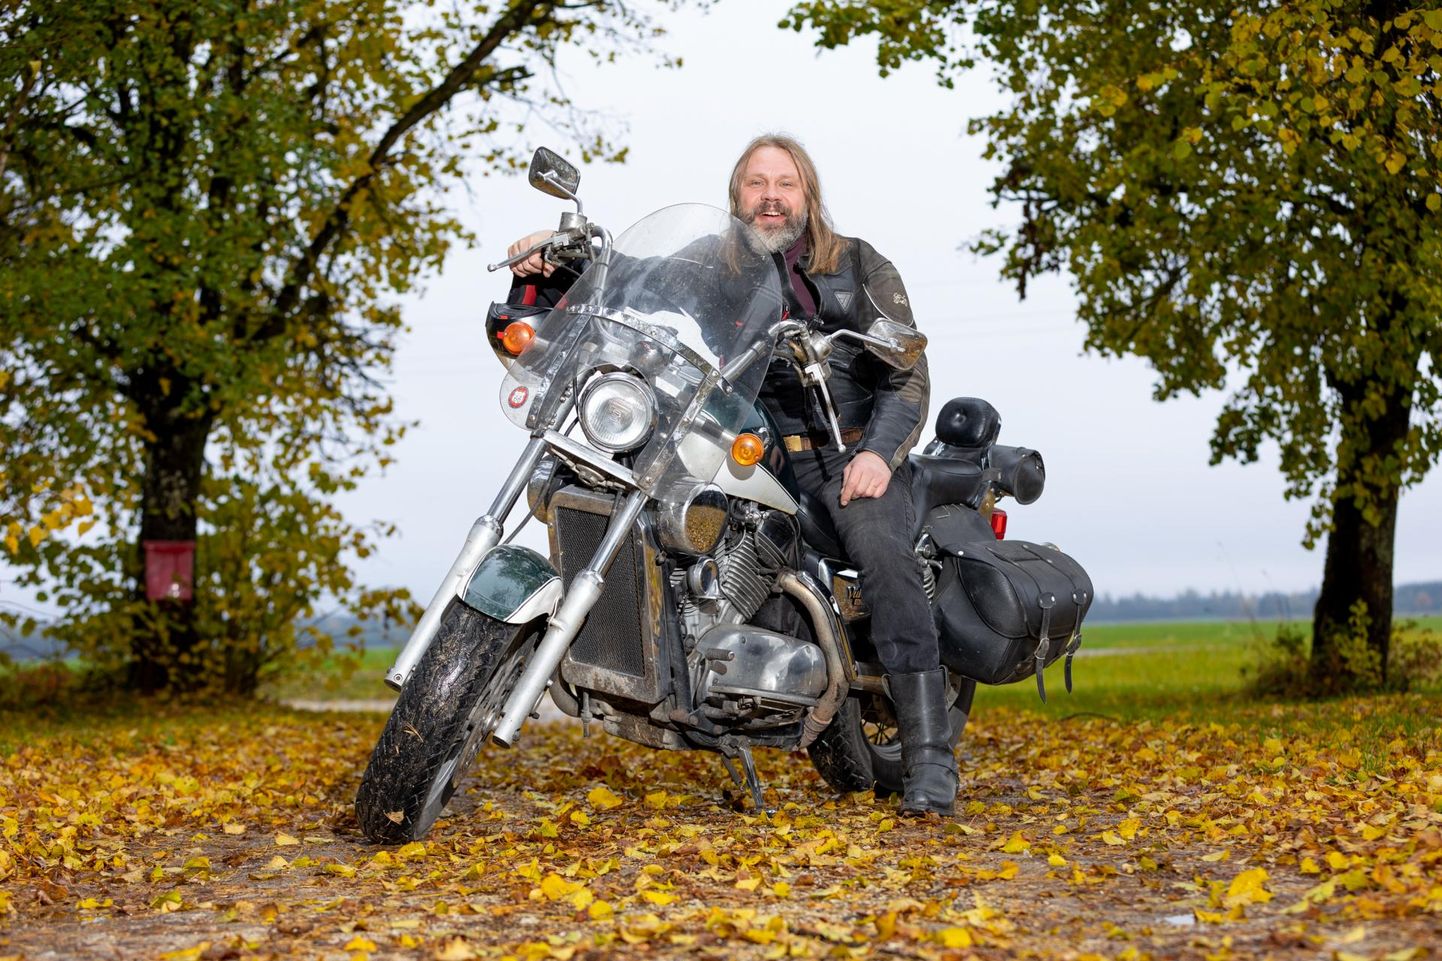 Adventkiriku mootorrattahuvilistega koos on Toivo Kaasik nädalavahetustel lõõgastuseks ja oma lõbuks sõitmas käinud.